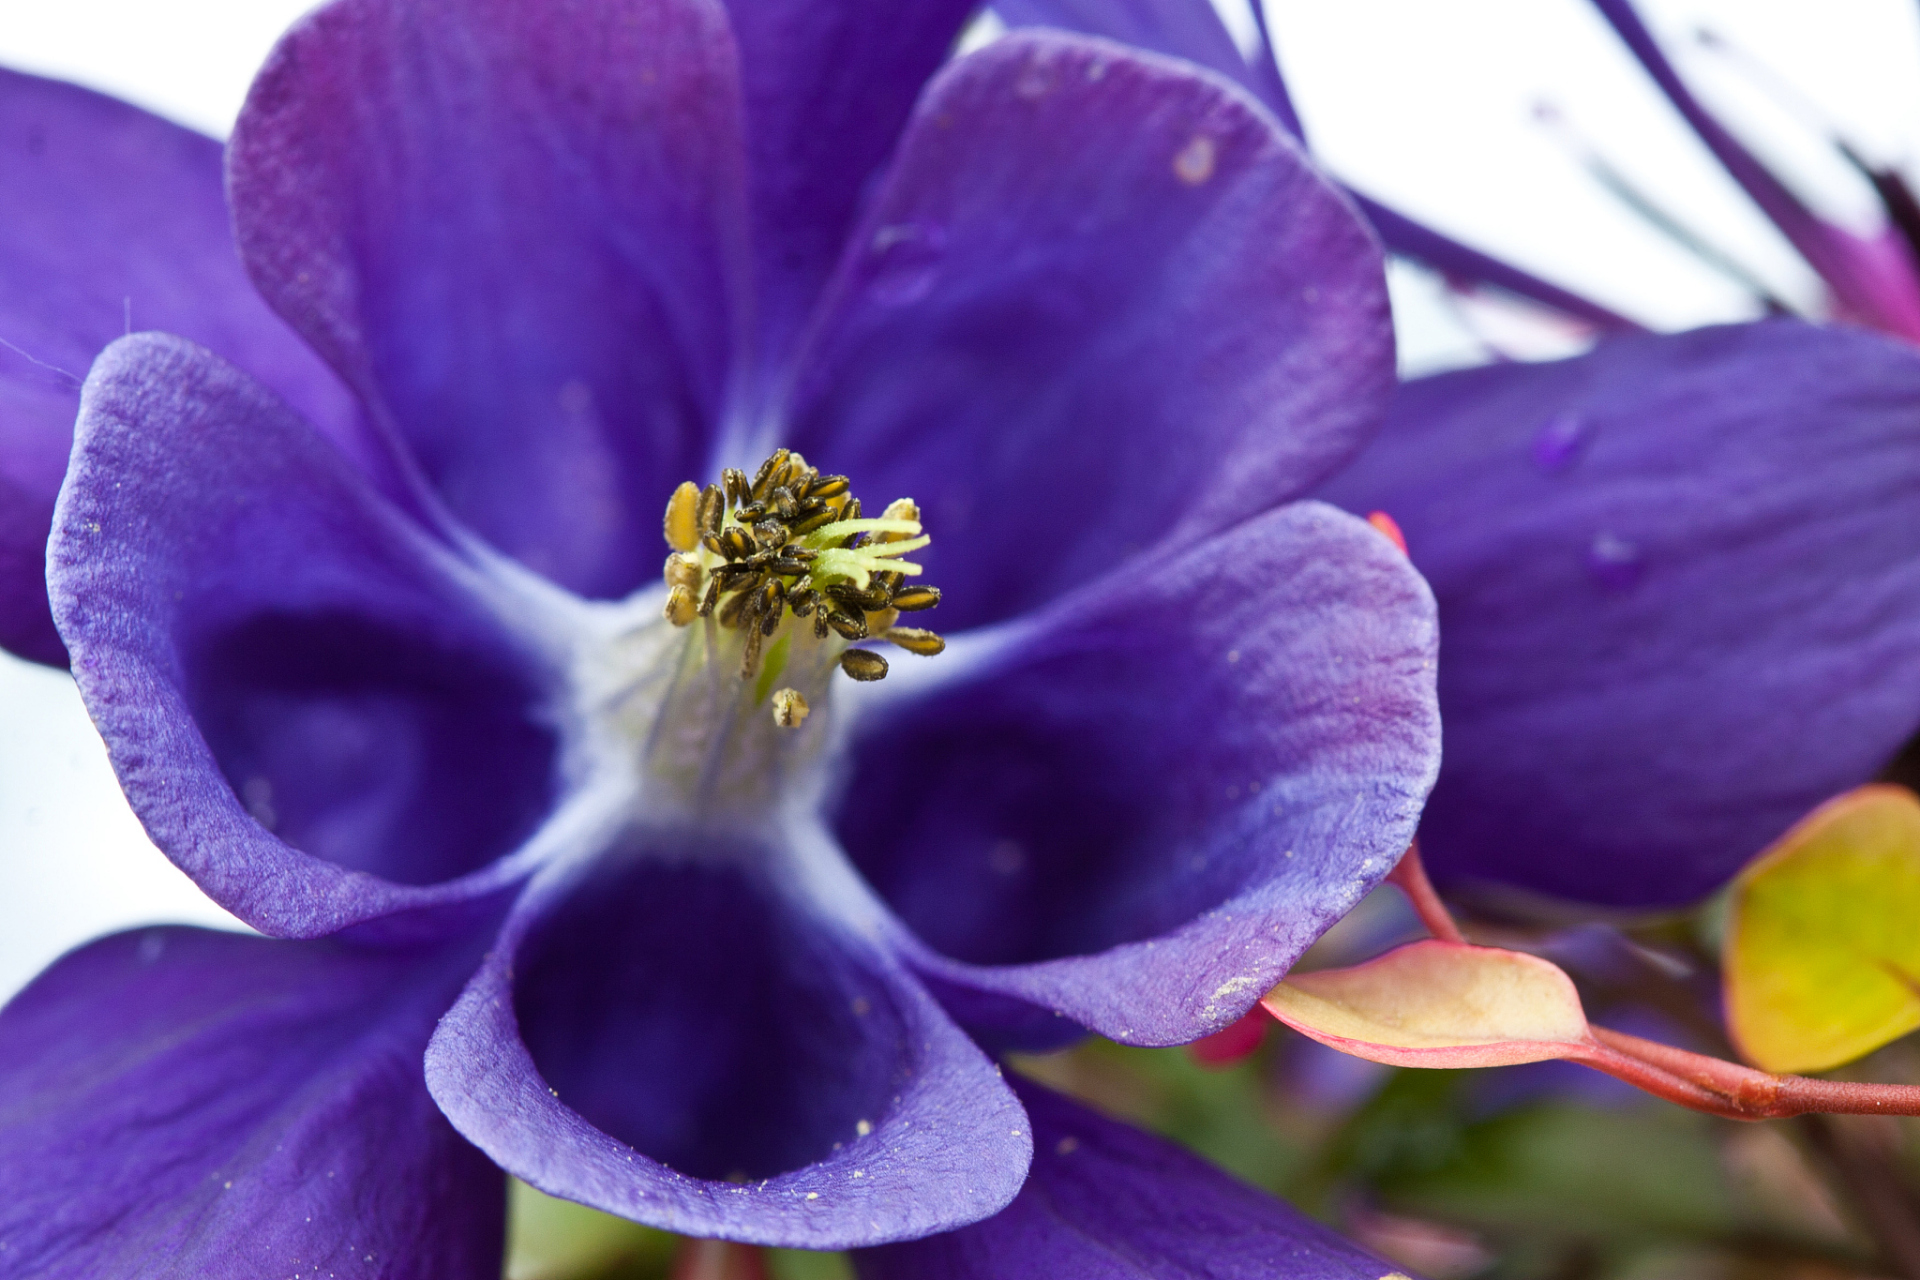 紫罗兰是欧洲的名花之一,其形态特征丰富,例如多年生草本,株高20